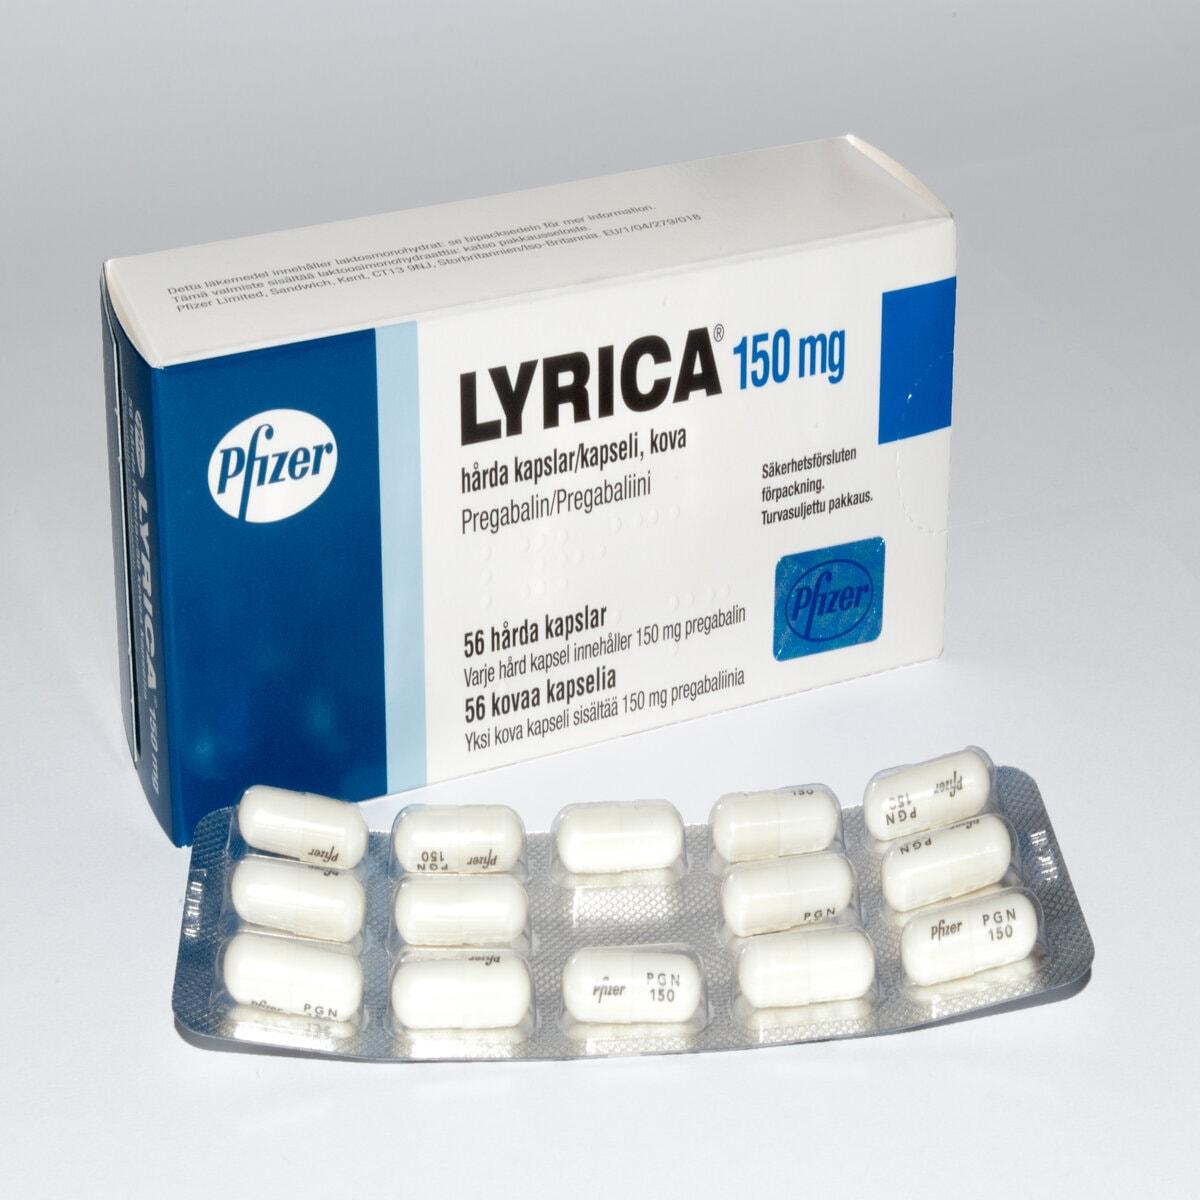 Lyrica 150mg Capsules - Pregabalin, 28 Capsules - Asset Pharmacy